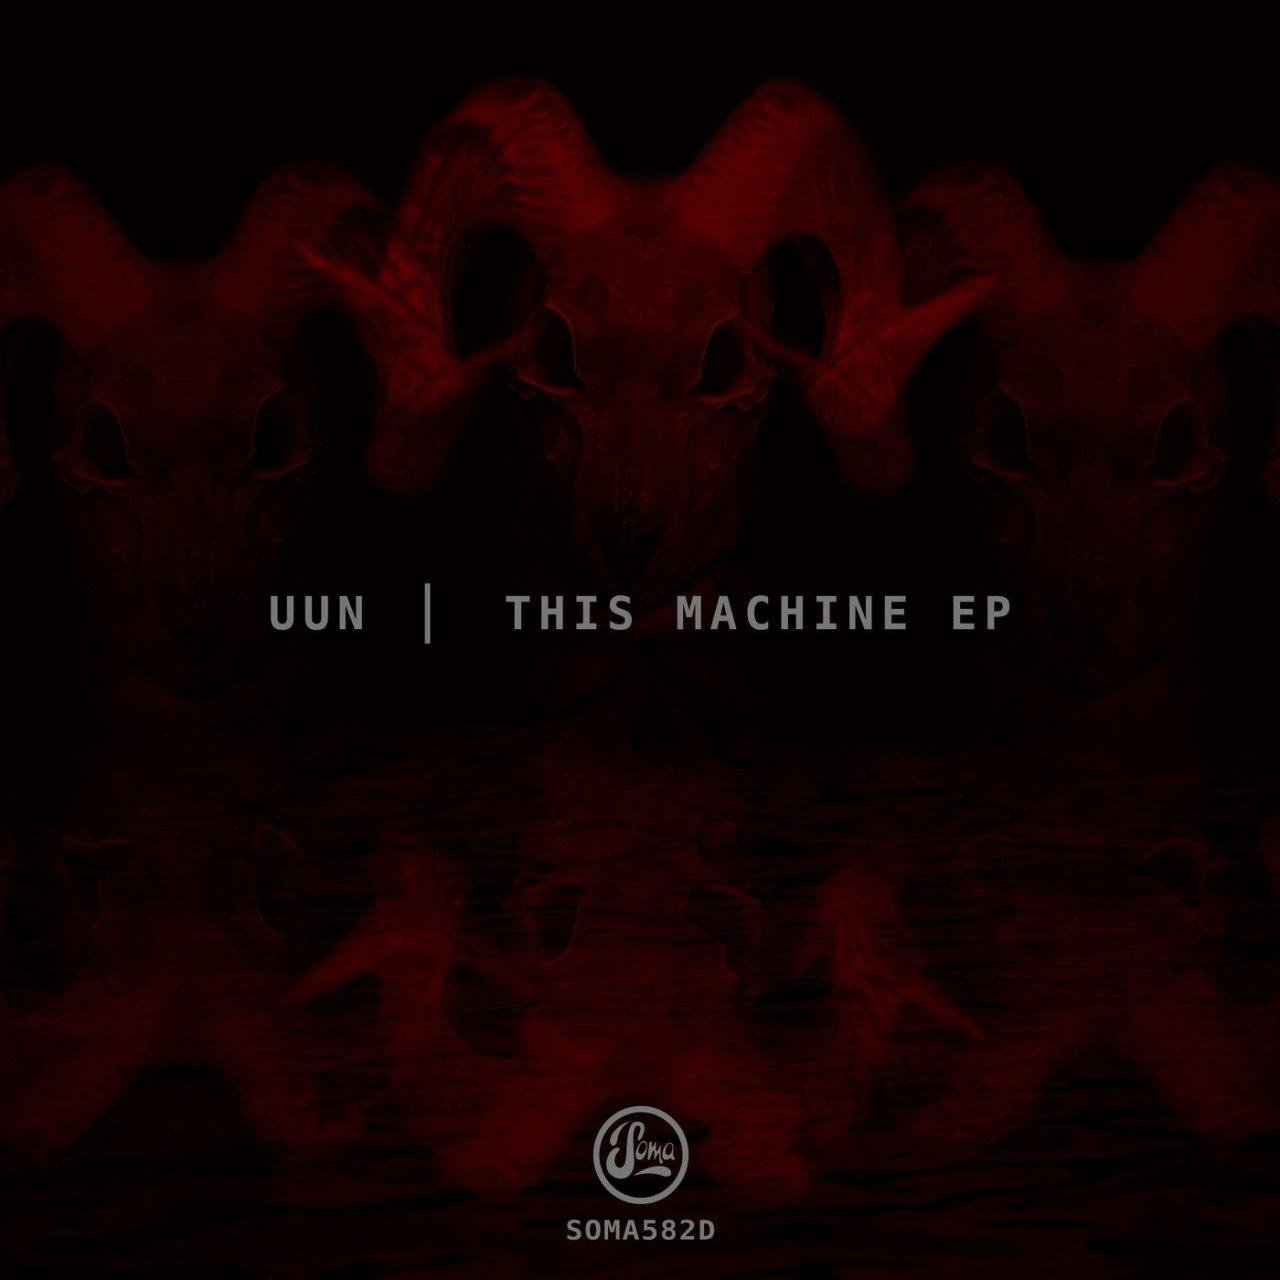 Uun-This Machine EP-(SOMA582D)-24BIT-WEB-FLAC-2020-BABAS